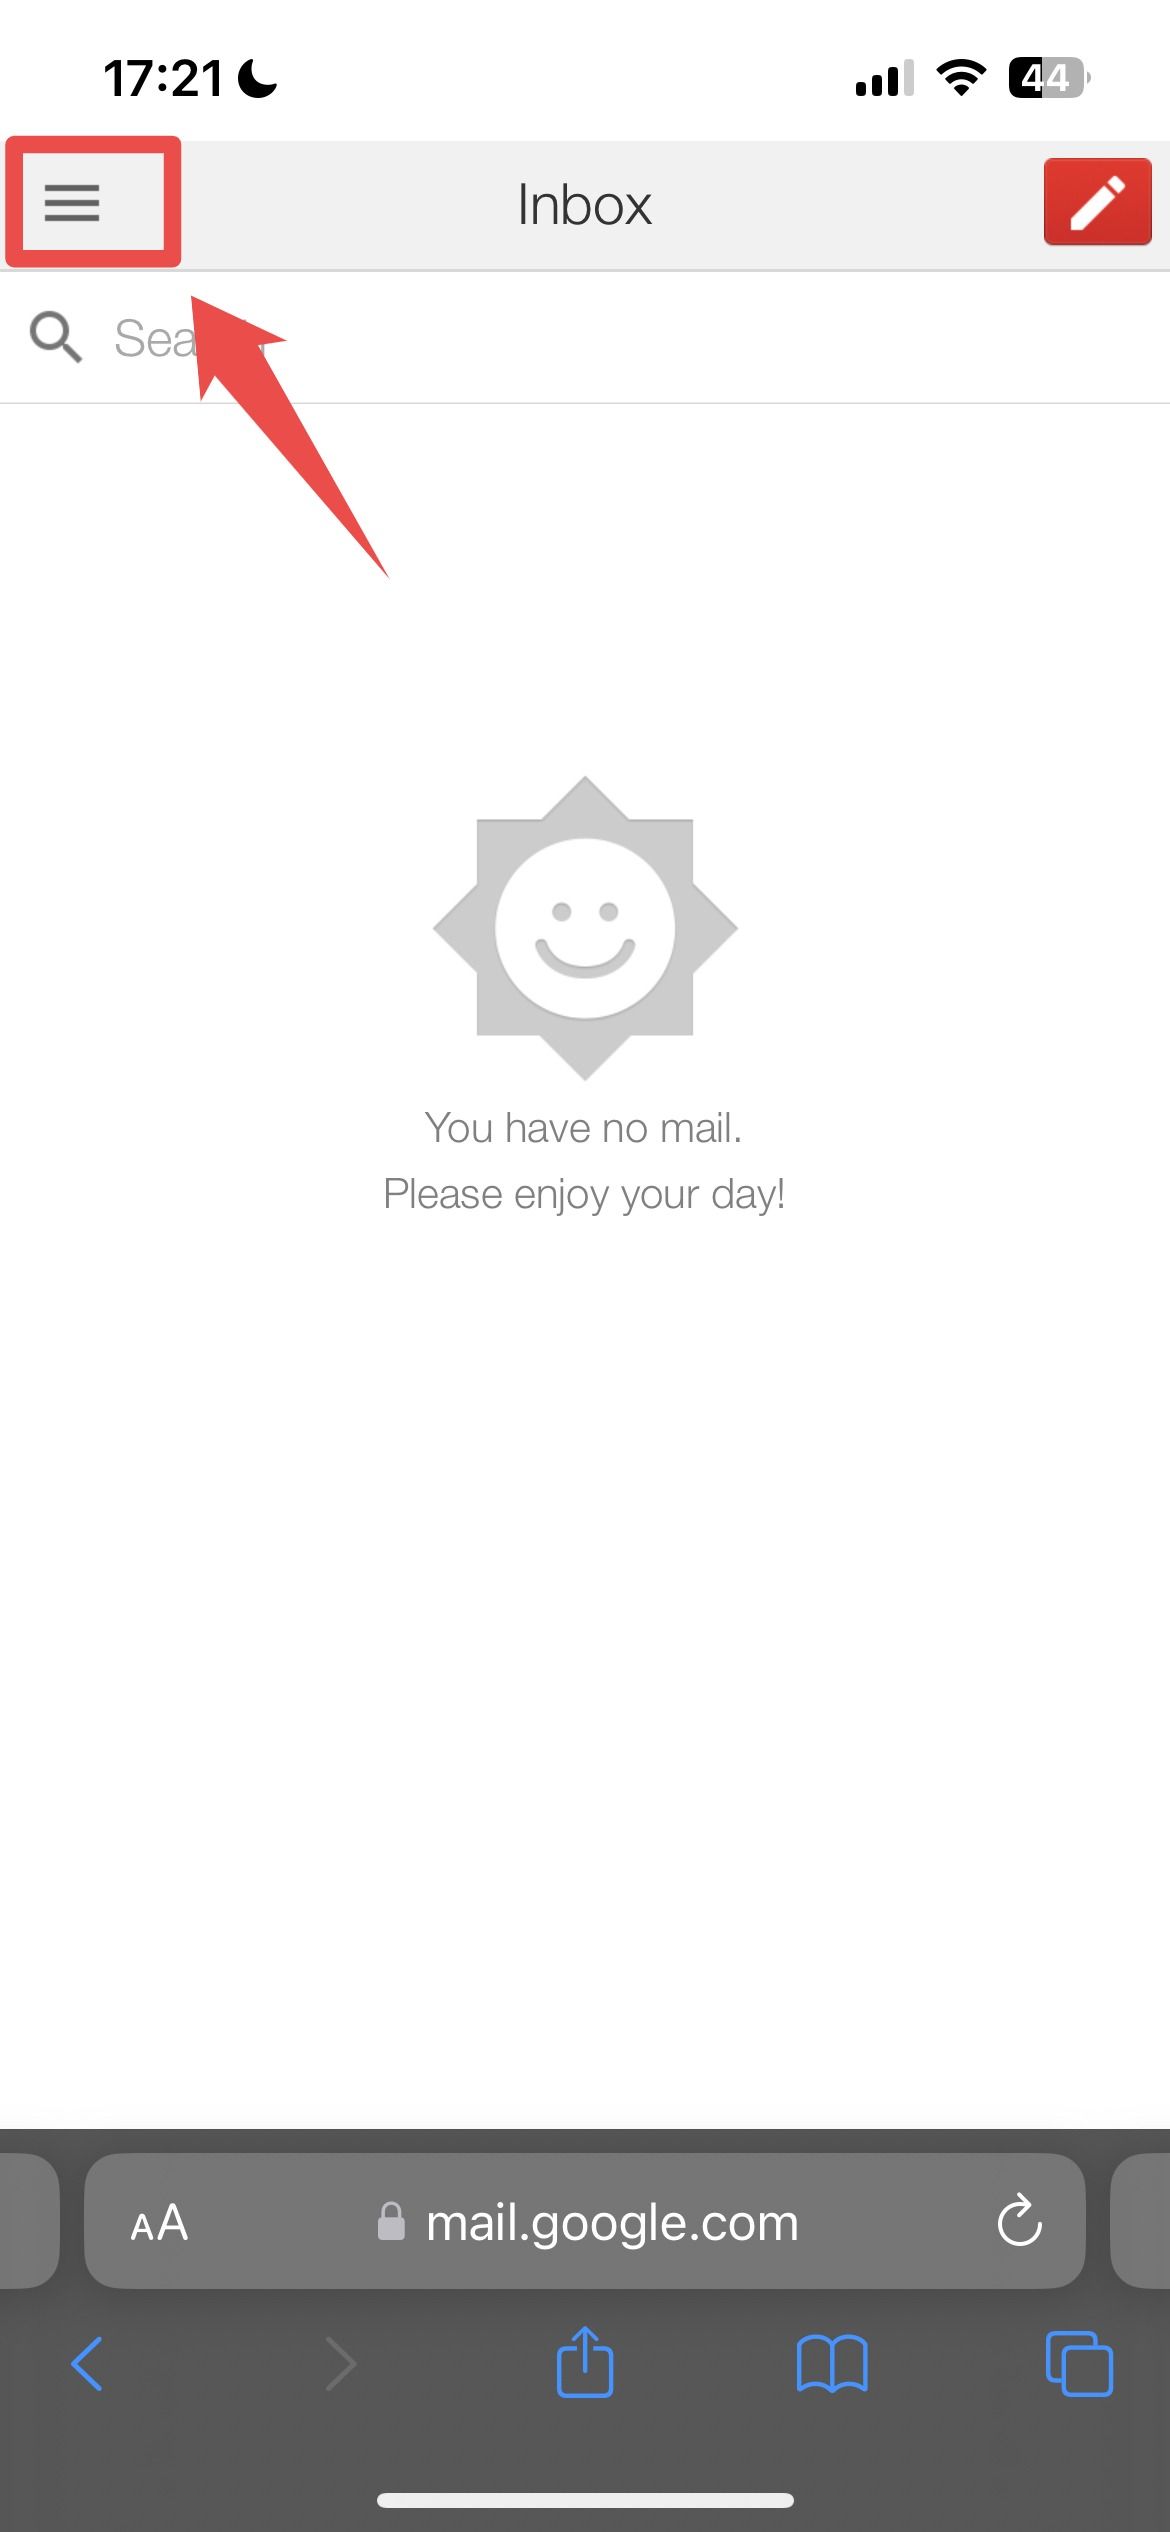 Página inicial do Gmail no aplicativo da web para iPhone